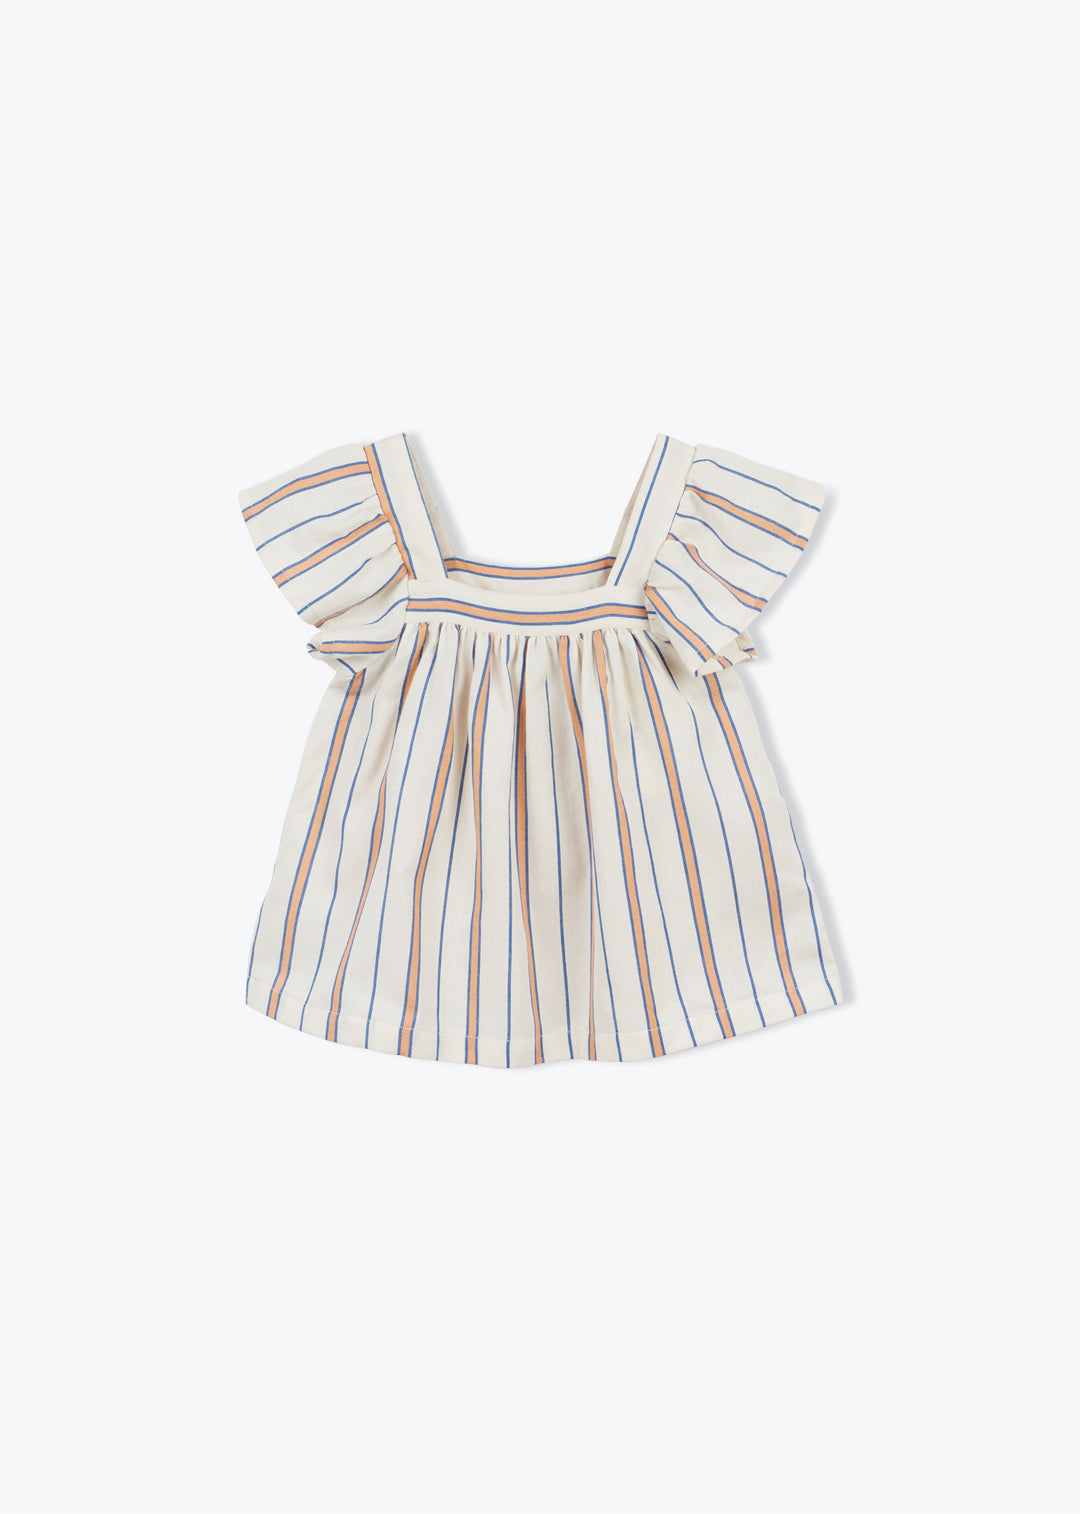 Blouse Fleurine Girl Stripe Navy - قميص